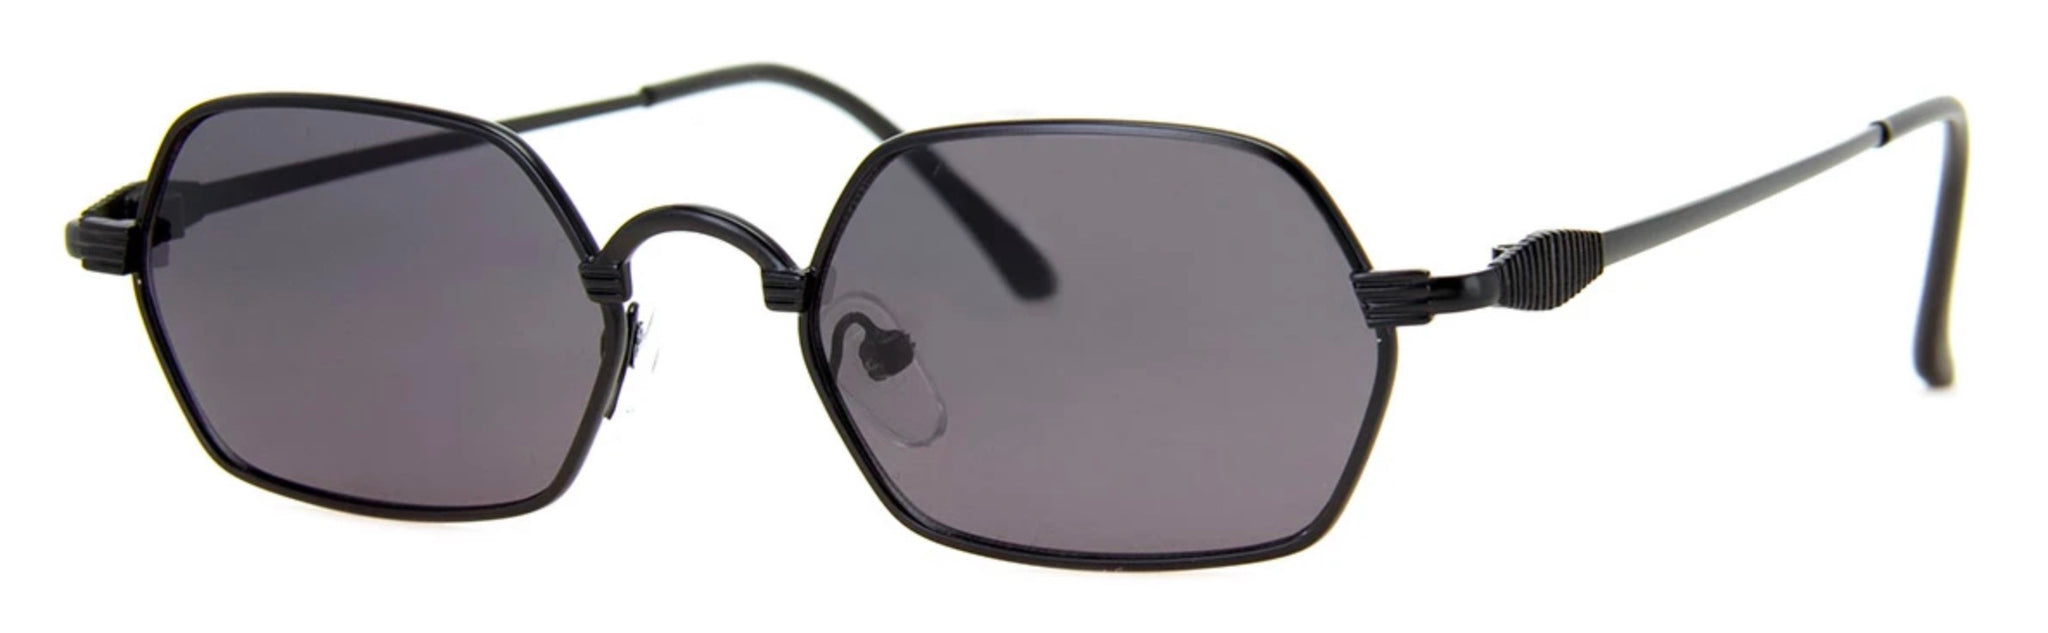 Micro - Black Sunglasses